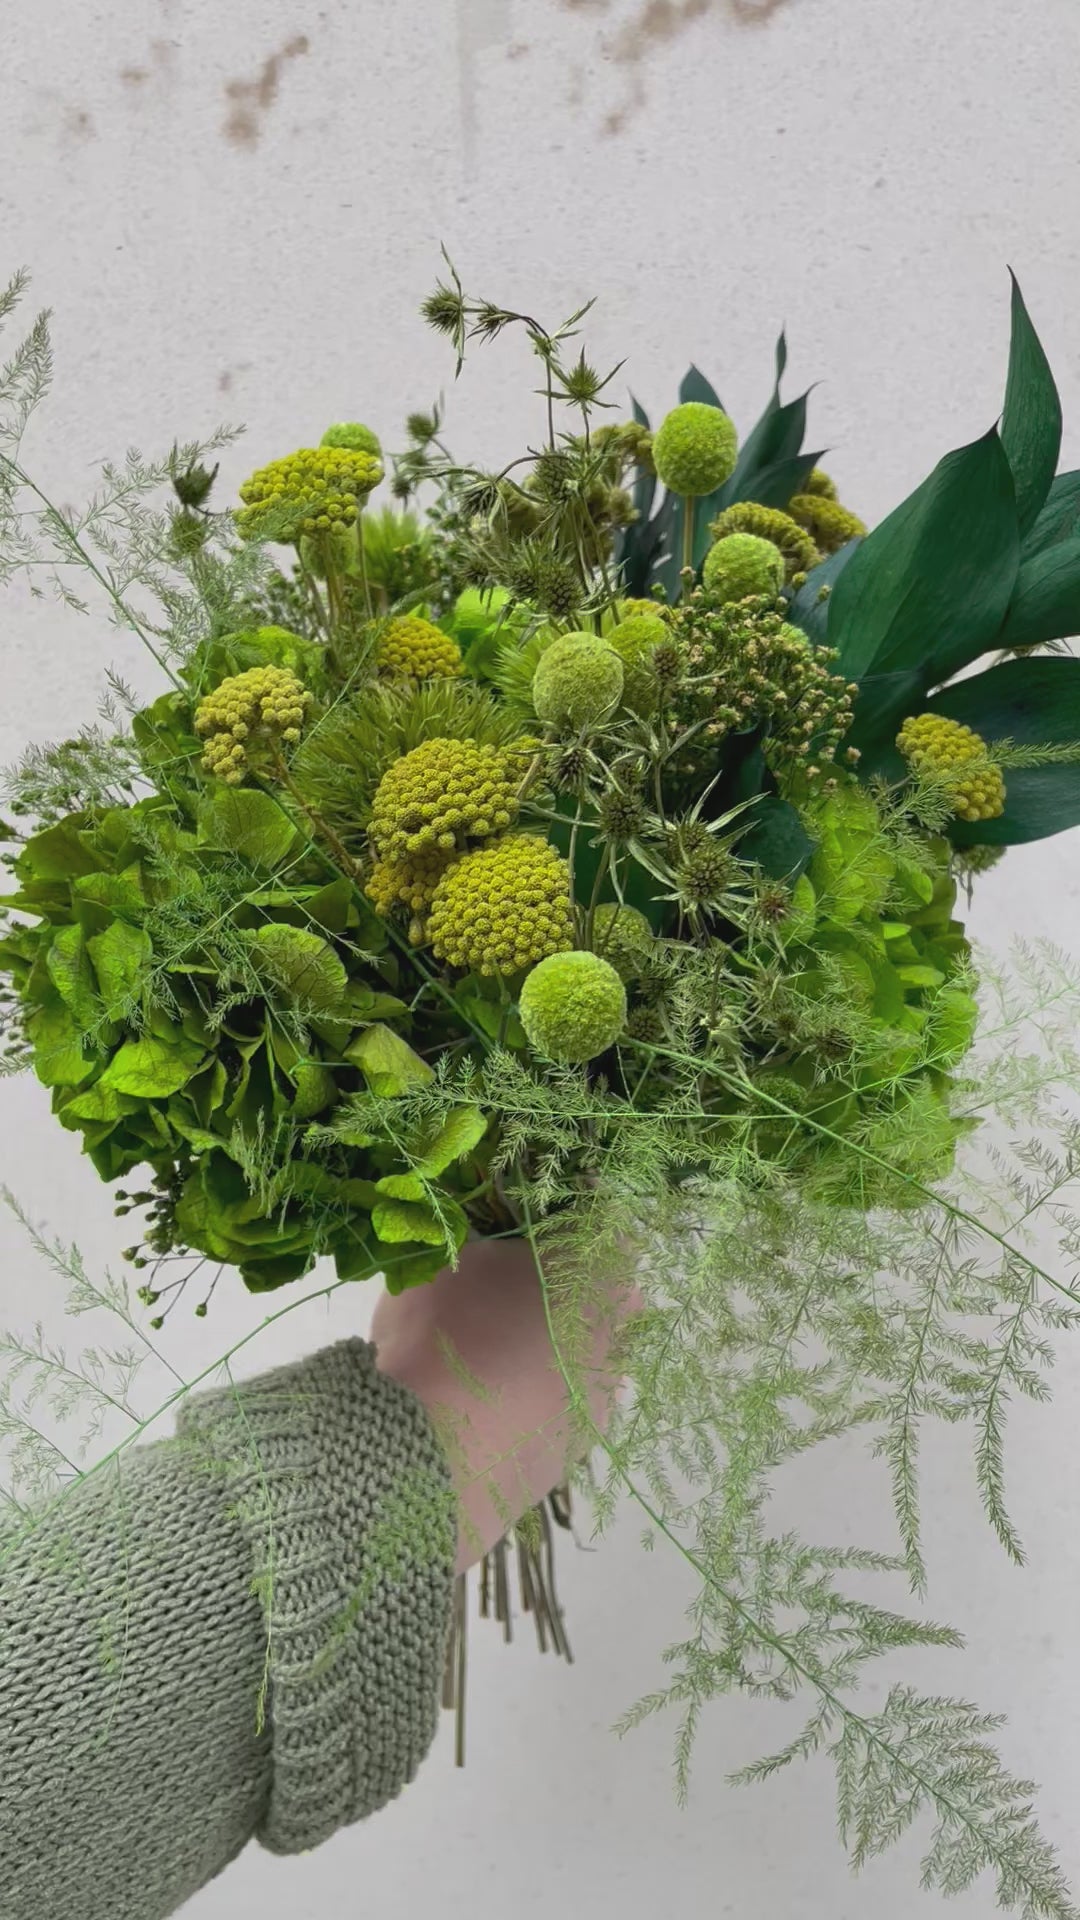 Bouquet de fleurs stabilisées éternelles vert composé d'Hortensia, Chardon Echinops, Chardon, Broom, Craspedia, Achillée, Ruscus, Asparagus. En mouvement